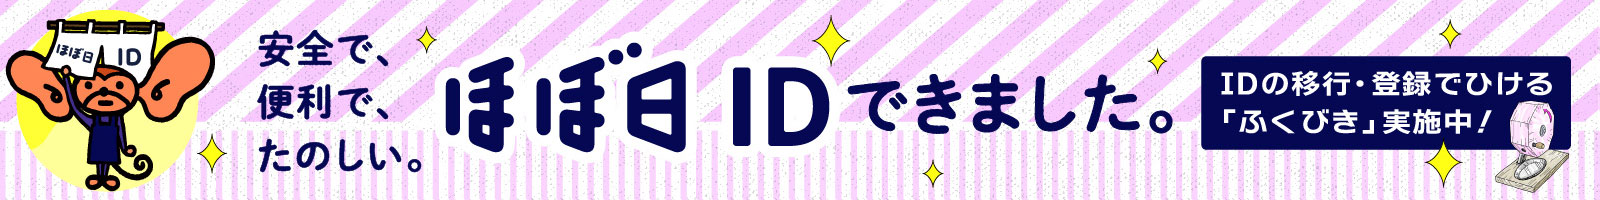 ID-fukubiki